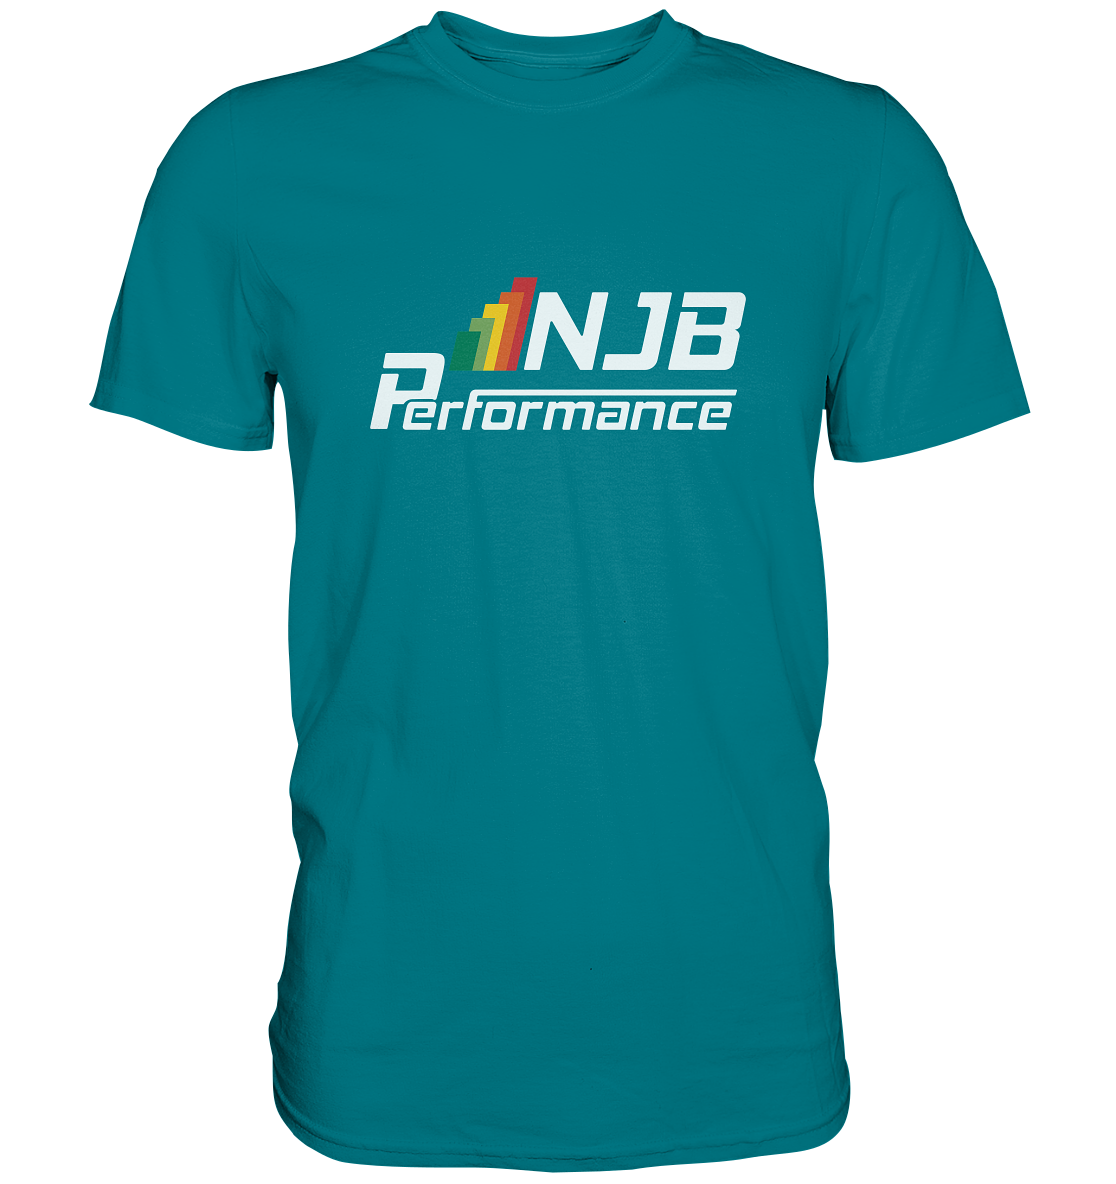 NJB PERFORMANCE - Basic Shirt